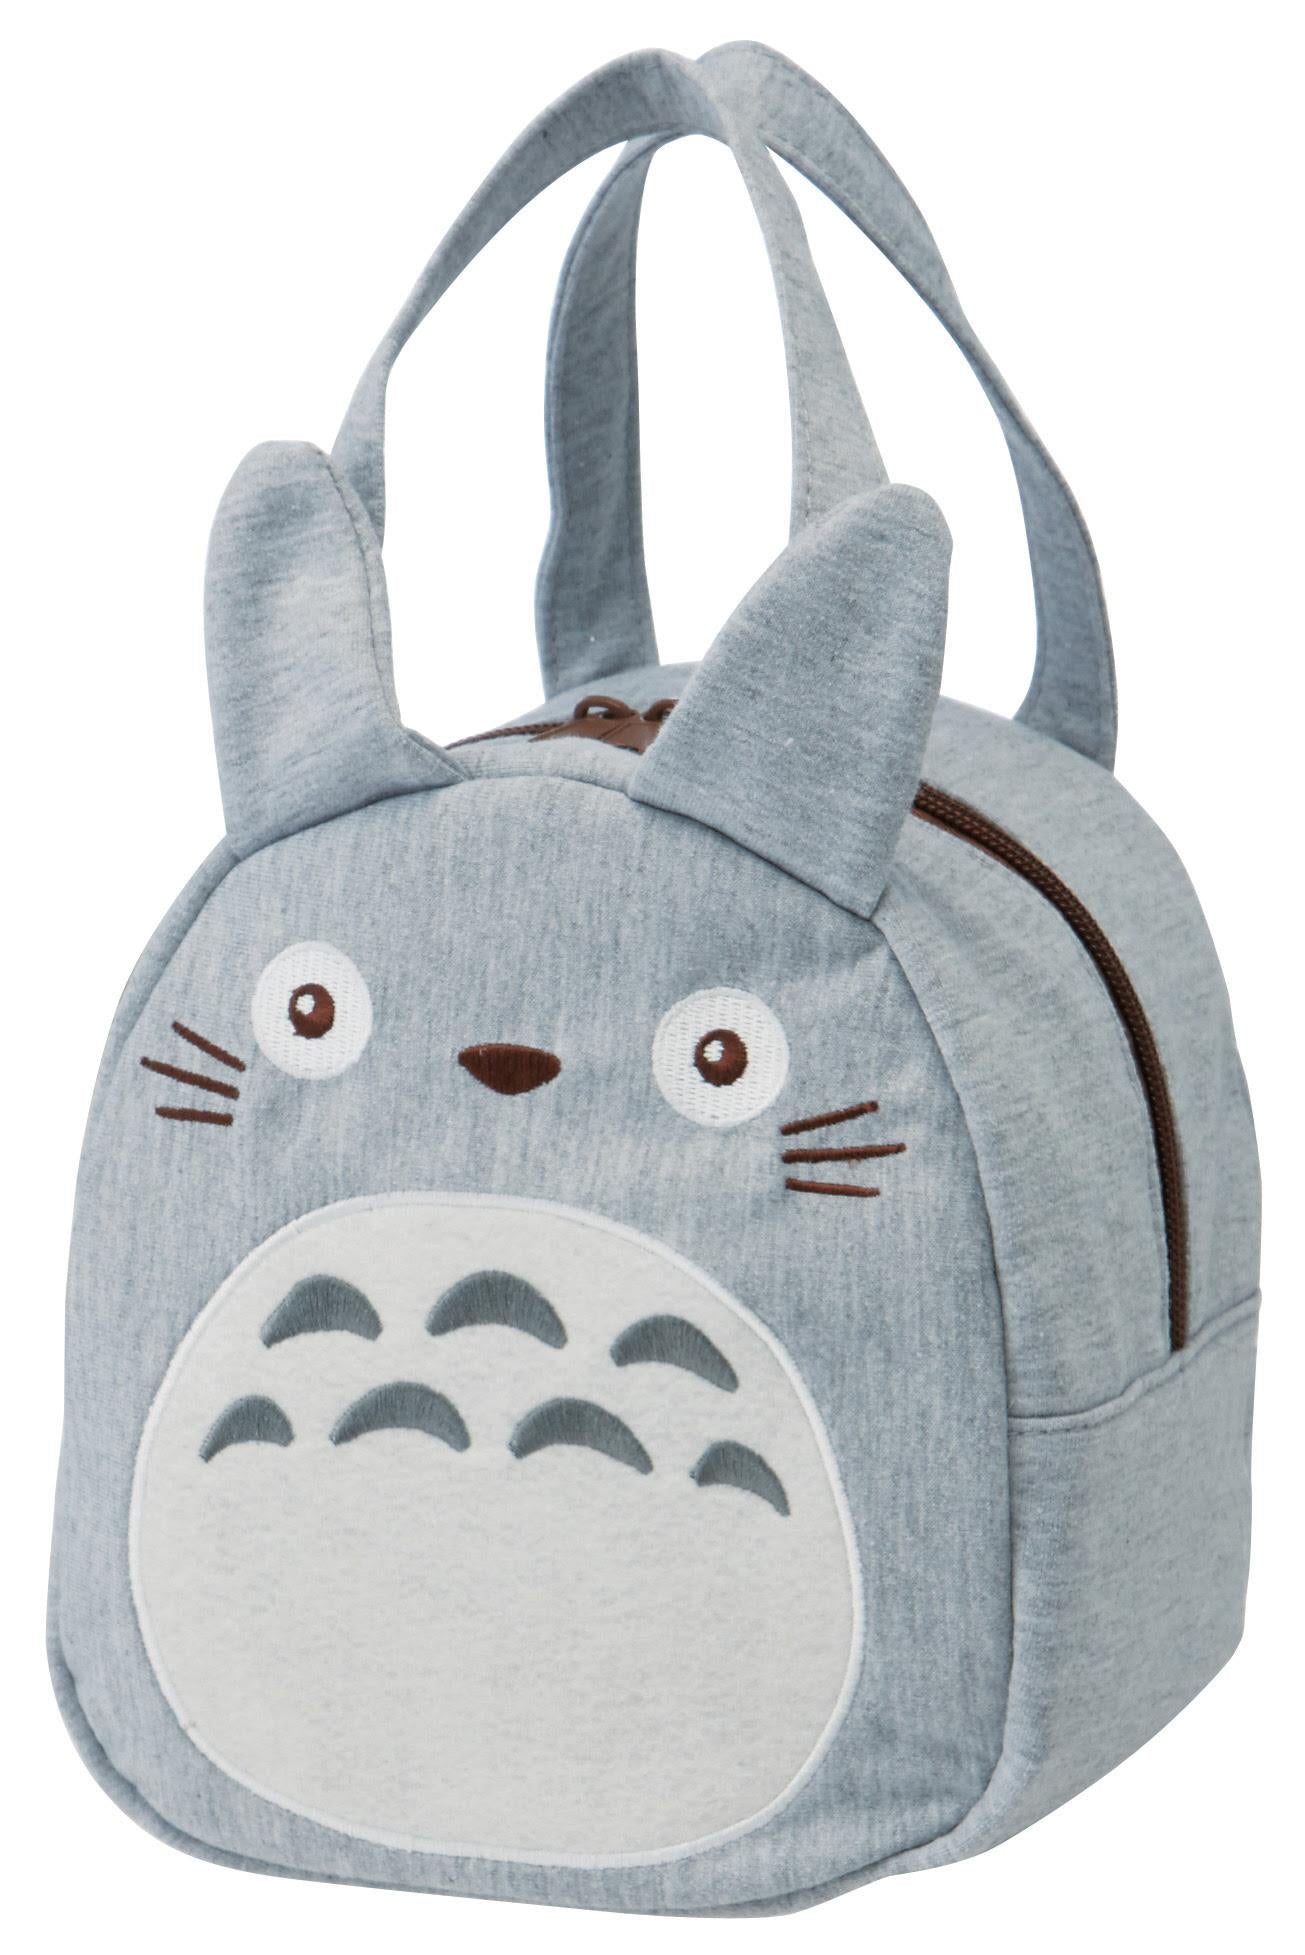 My Neighbour Totoro: Totoro Bag